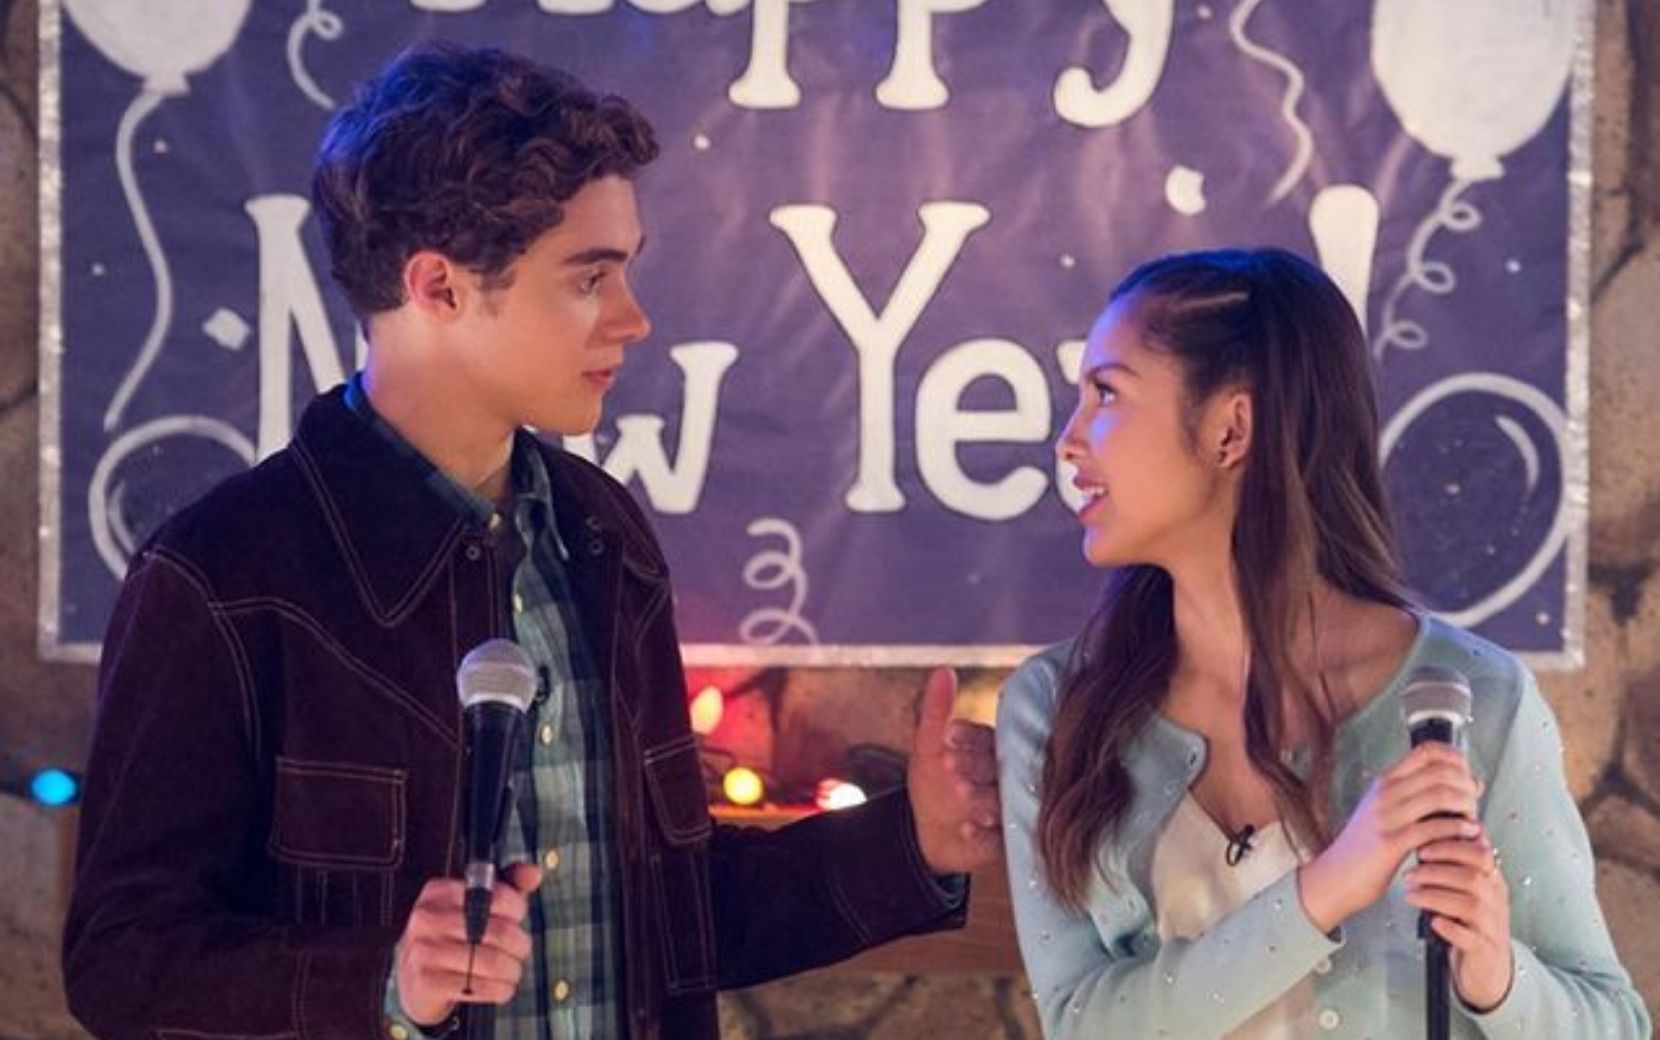 Elenco da série de "High School Musical" confirma fim das filmagens da 2ª temporada